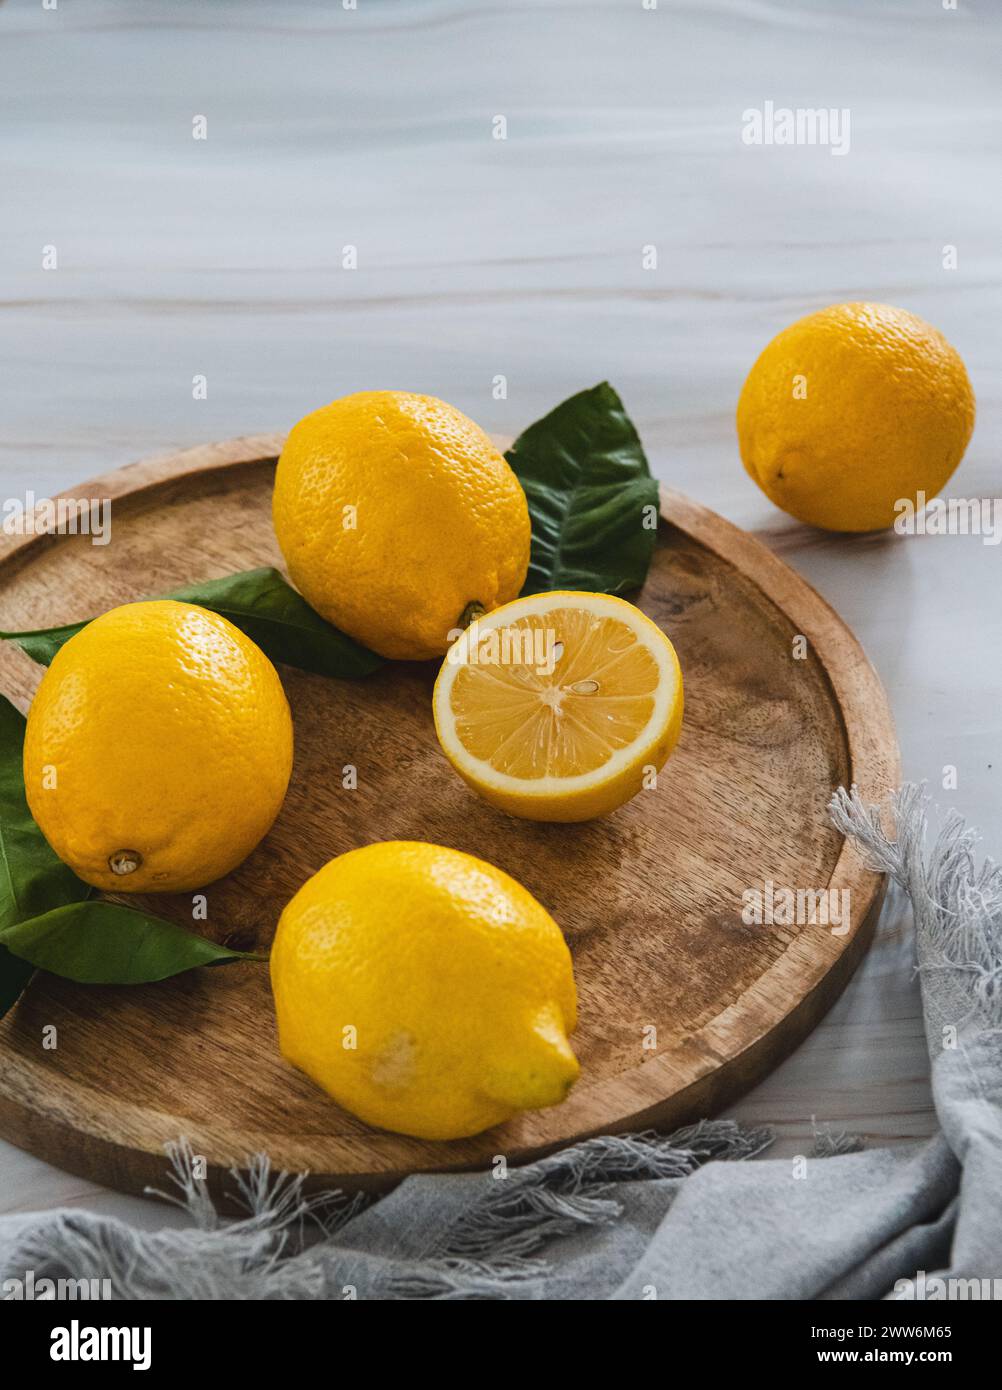 Limoni e tagliati a metà limone con foglie verdi su vassoio di legno, tovagliolo grigio e tavolo di marmo Foto Stock